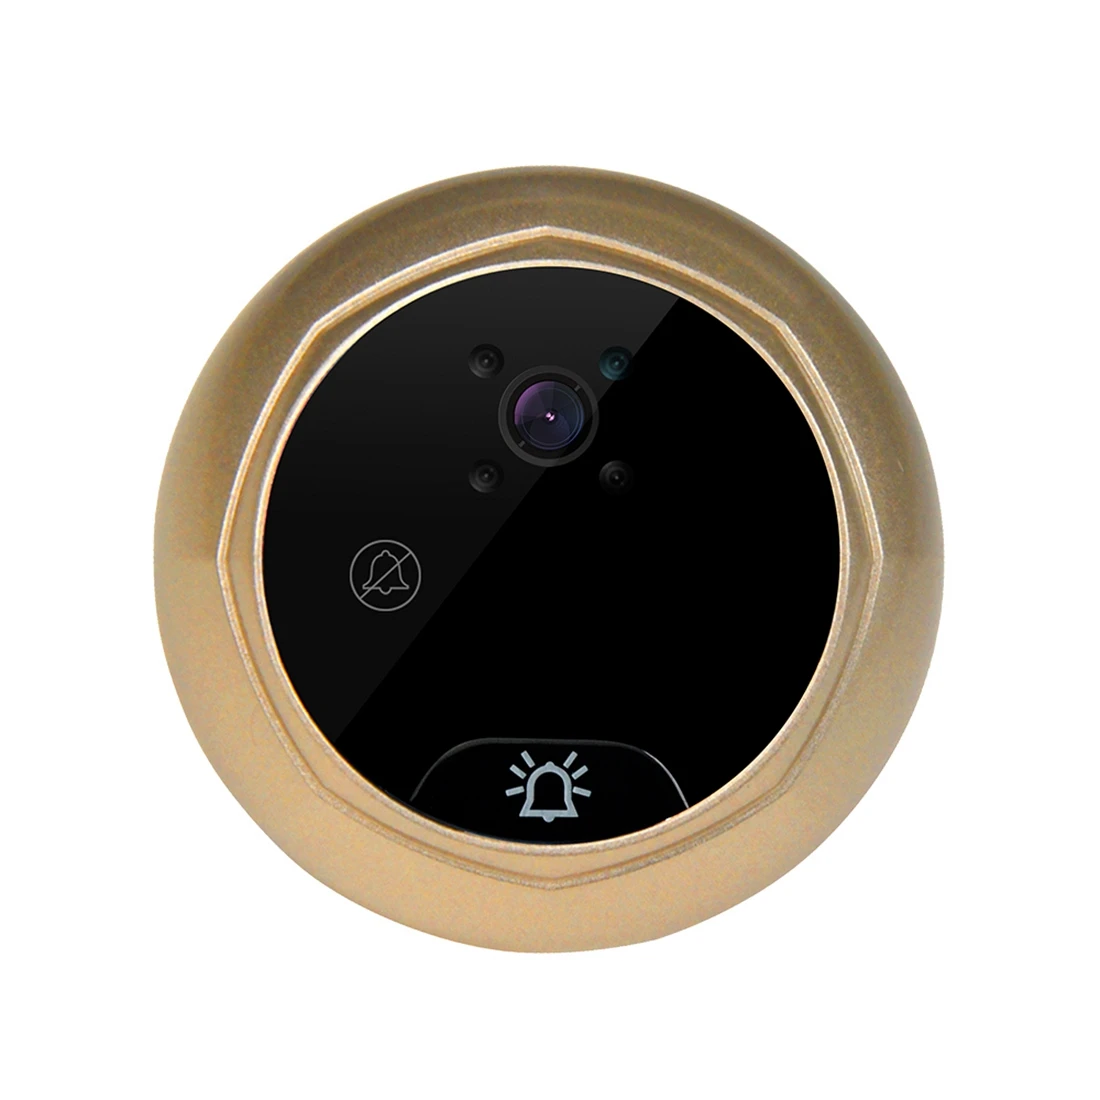 Цветной TFT-дисплей с диагональю 2,4 дюйма, камера для просмотра в дверной глазок, видеокамера для дверного звонка PIR ночного видения с широким углом обзора 160 °